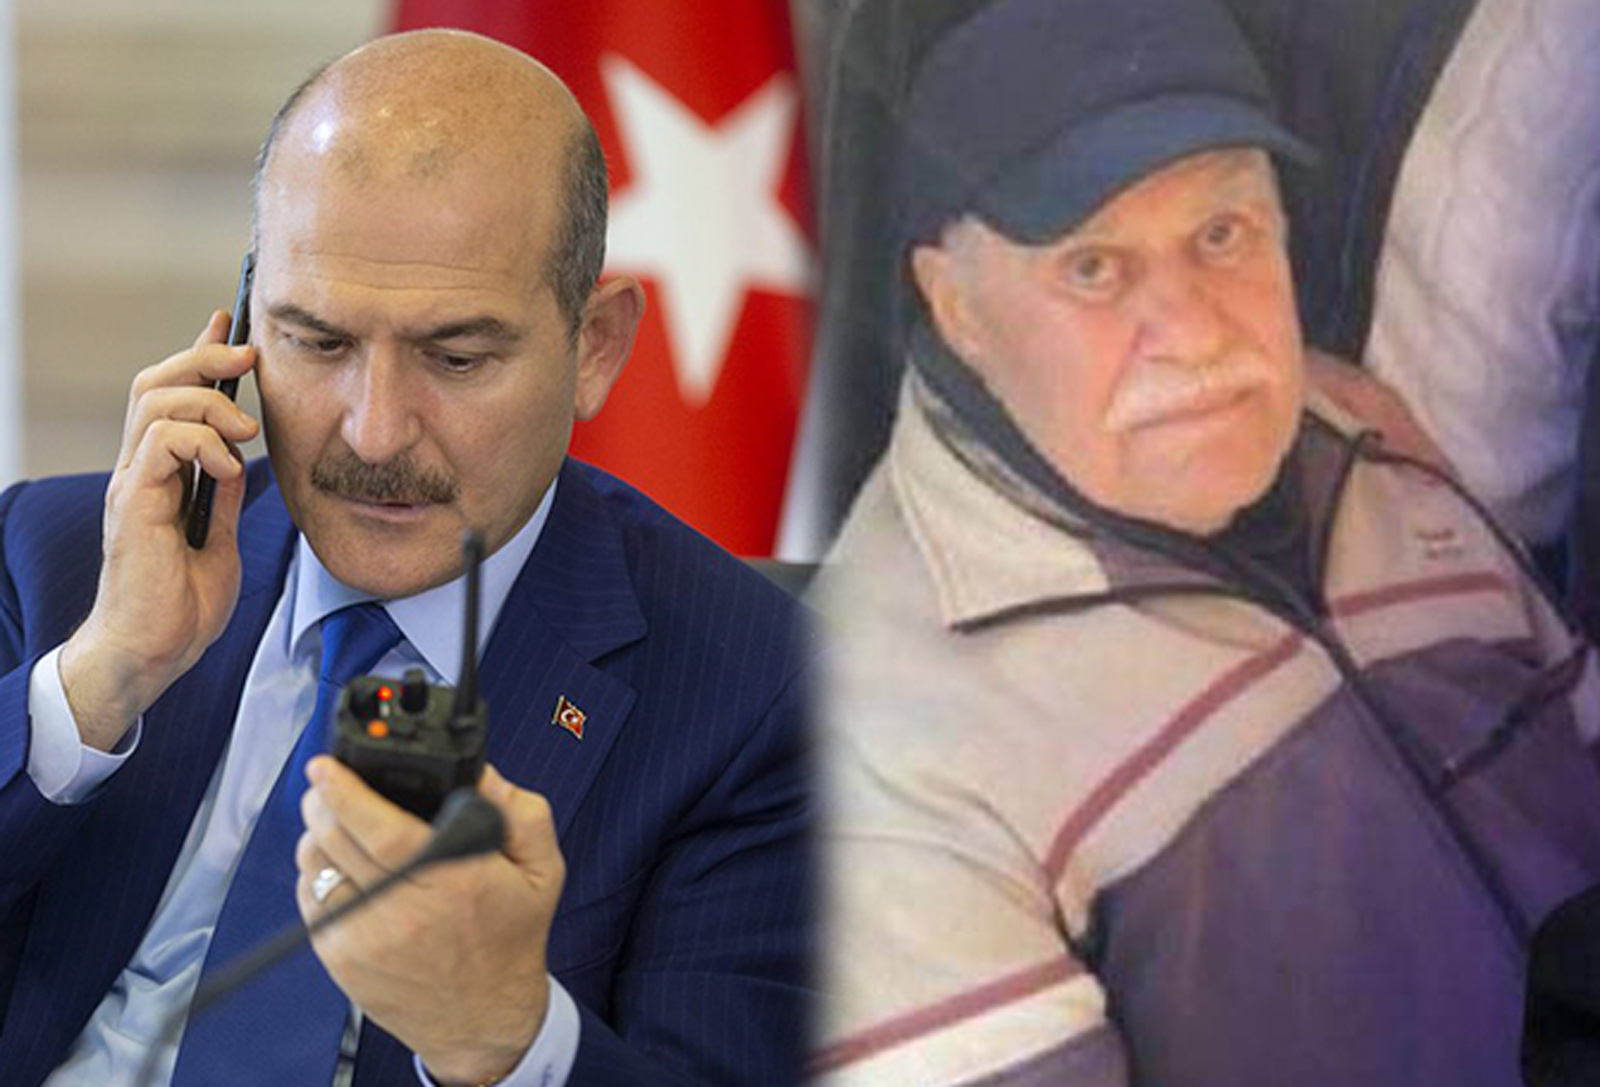 İçişleri Bakanı Süleyman Soylu'nun acı günü! Dayısı Ali İhsan Reis hayatını kaybetti!